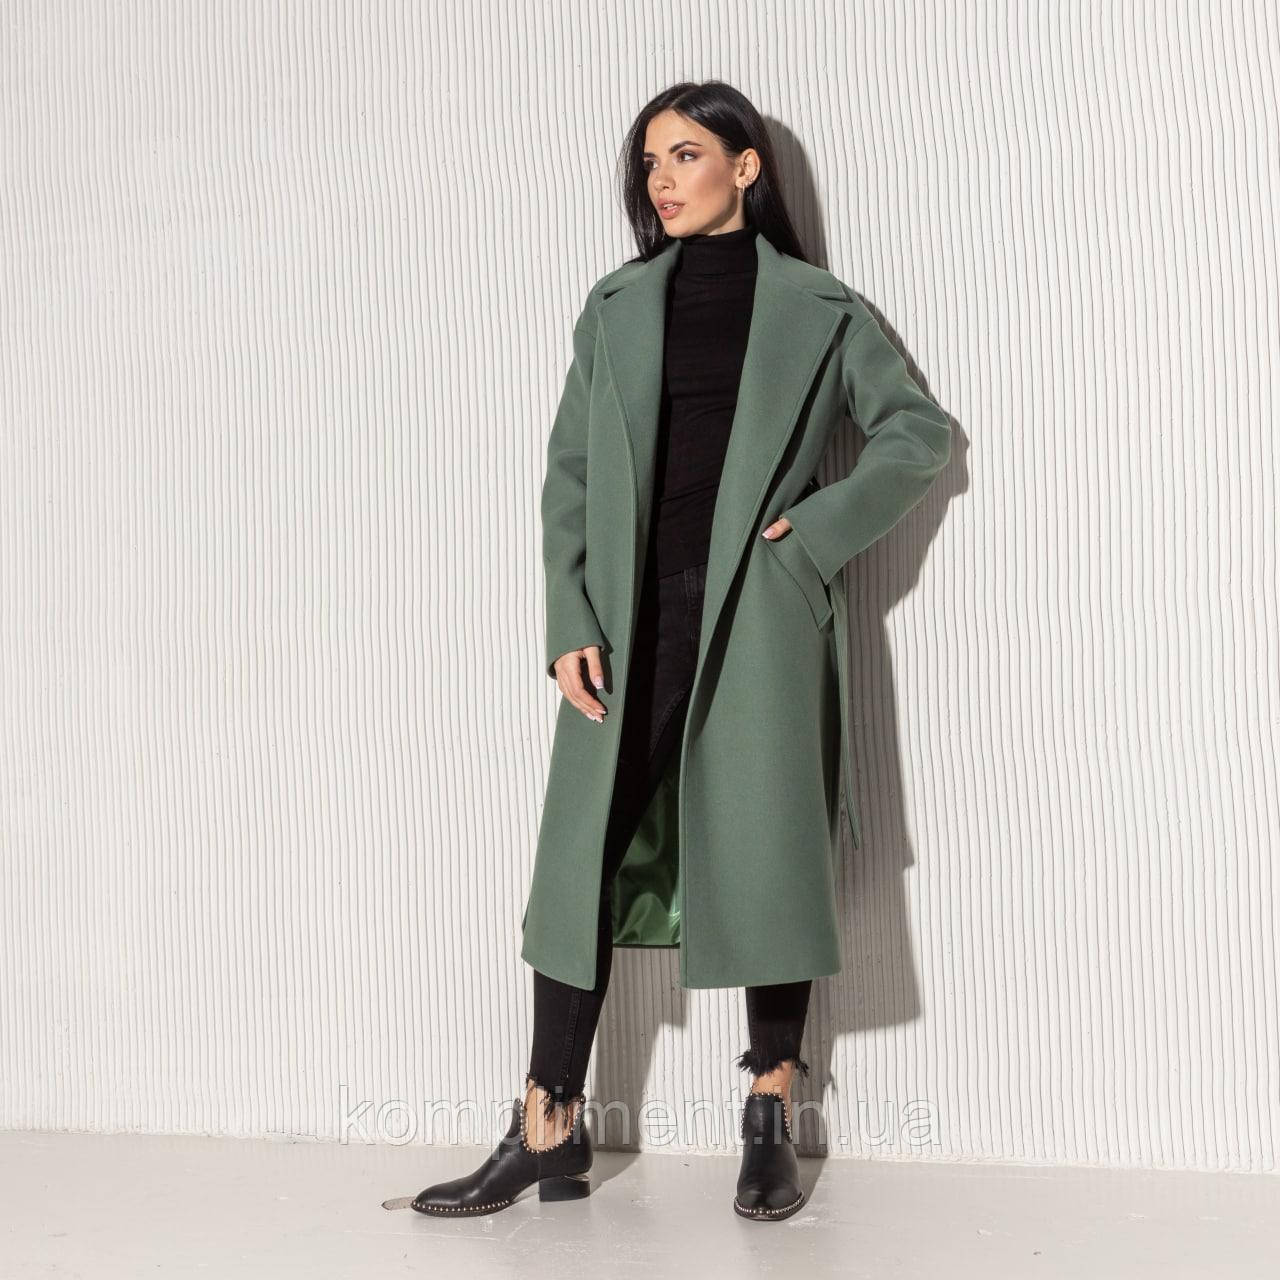 Елегантне жіноче молодіжне демісезонне пальто "Мадрид", оливковий, фото 1